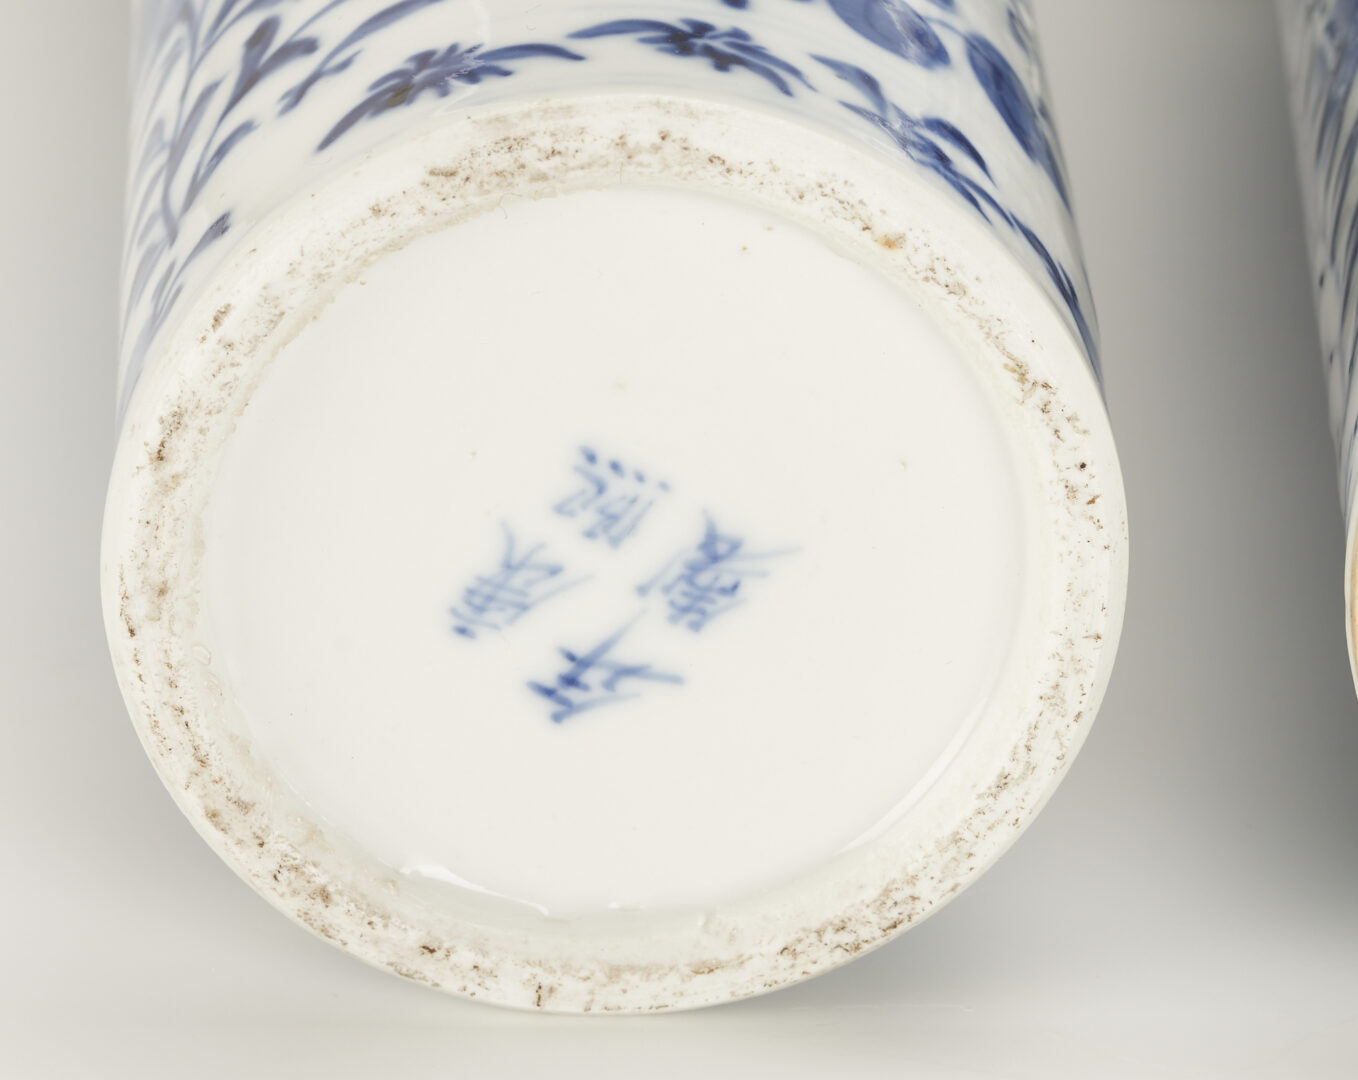 Lot 870: 10 pcs. Asian Blue & White Porcelain, incl. Garniture Sets